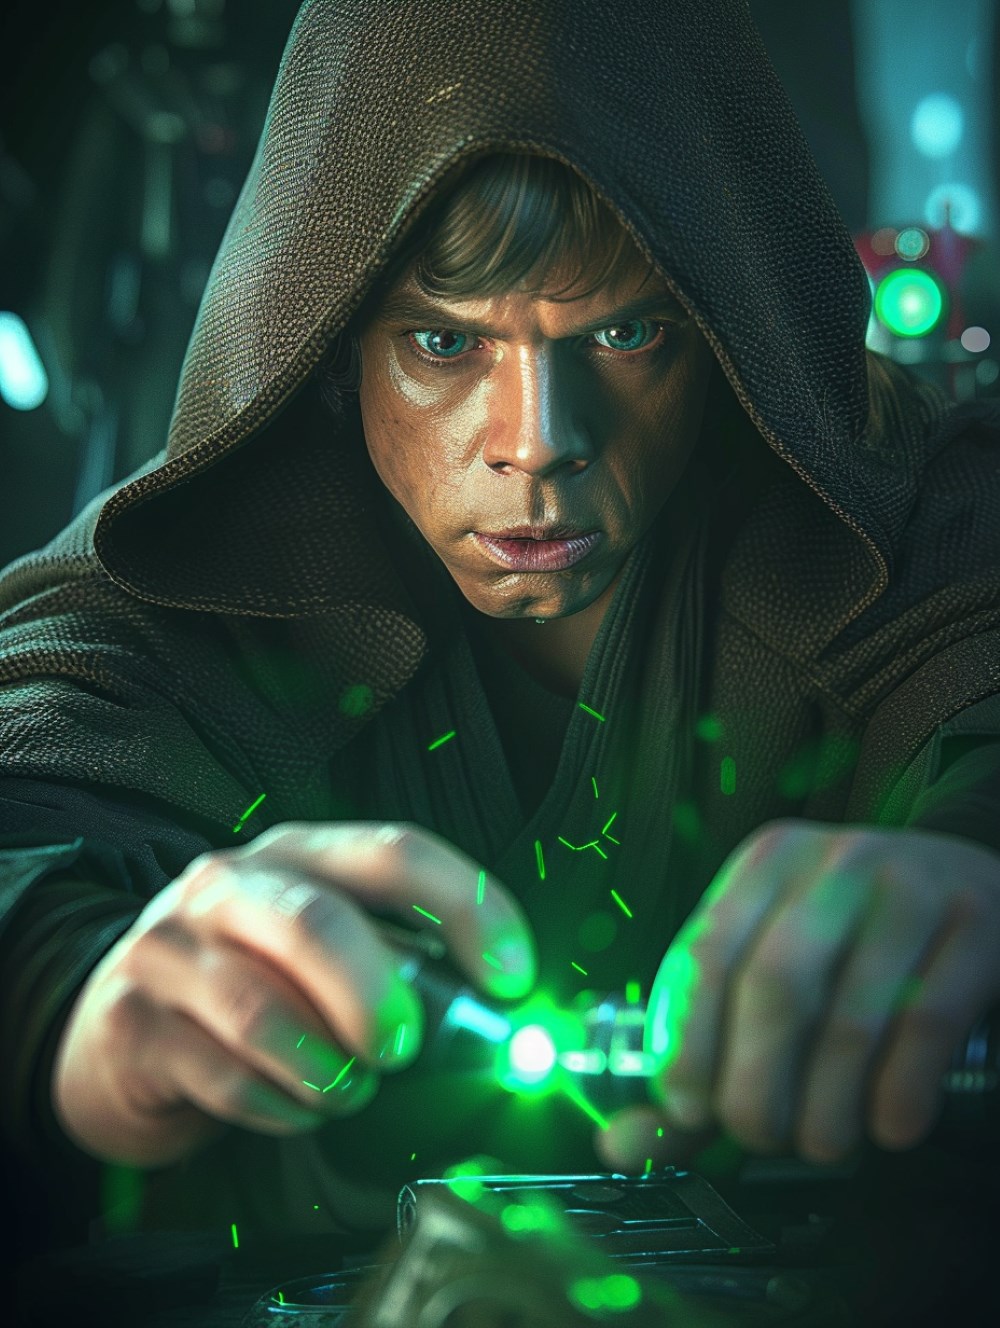 Luke Skywalker is creating a green kyper crystal